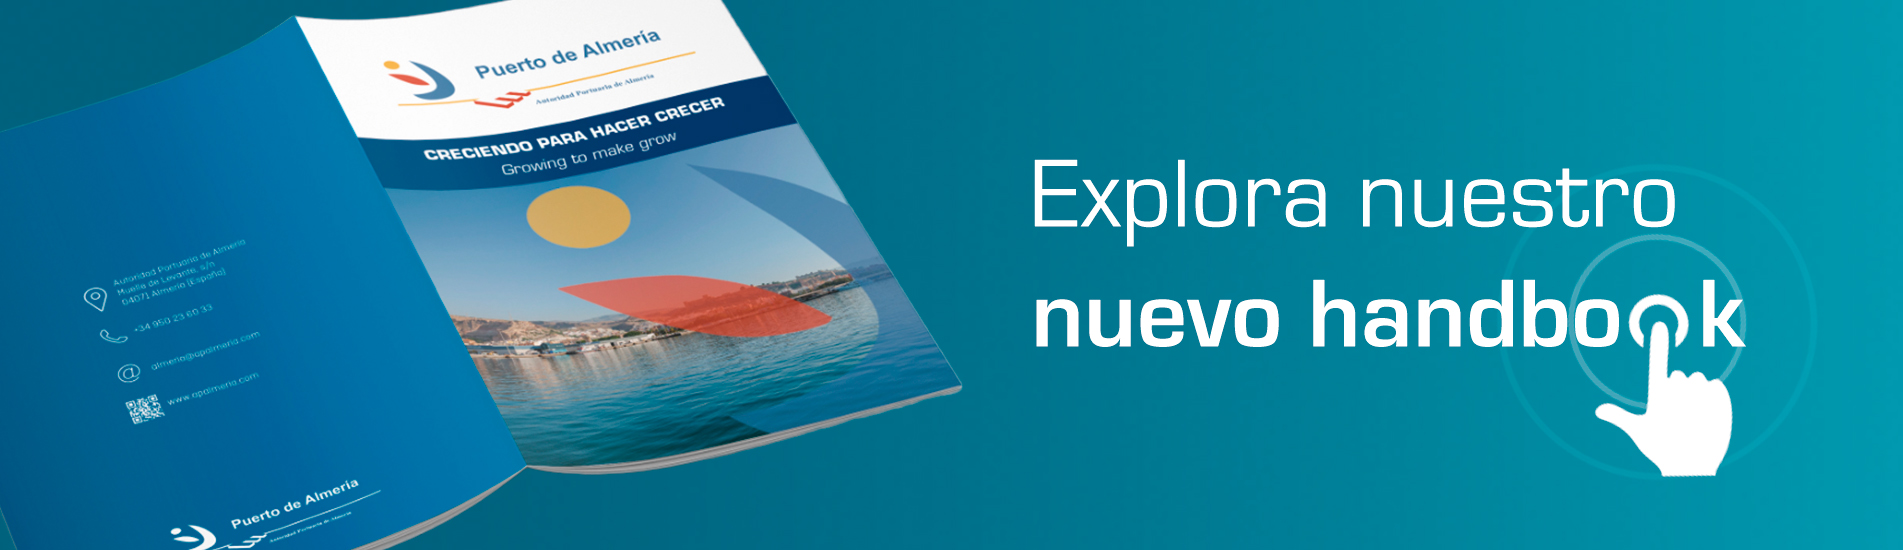 Accede al handbook de la Autoridad Portuaria de Almería